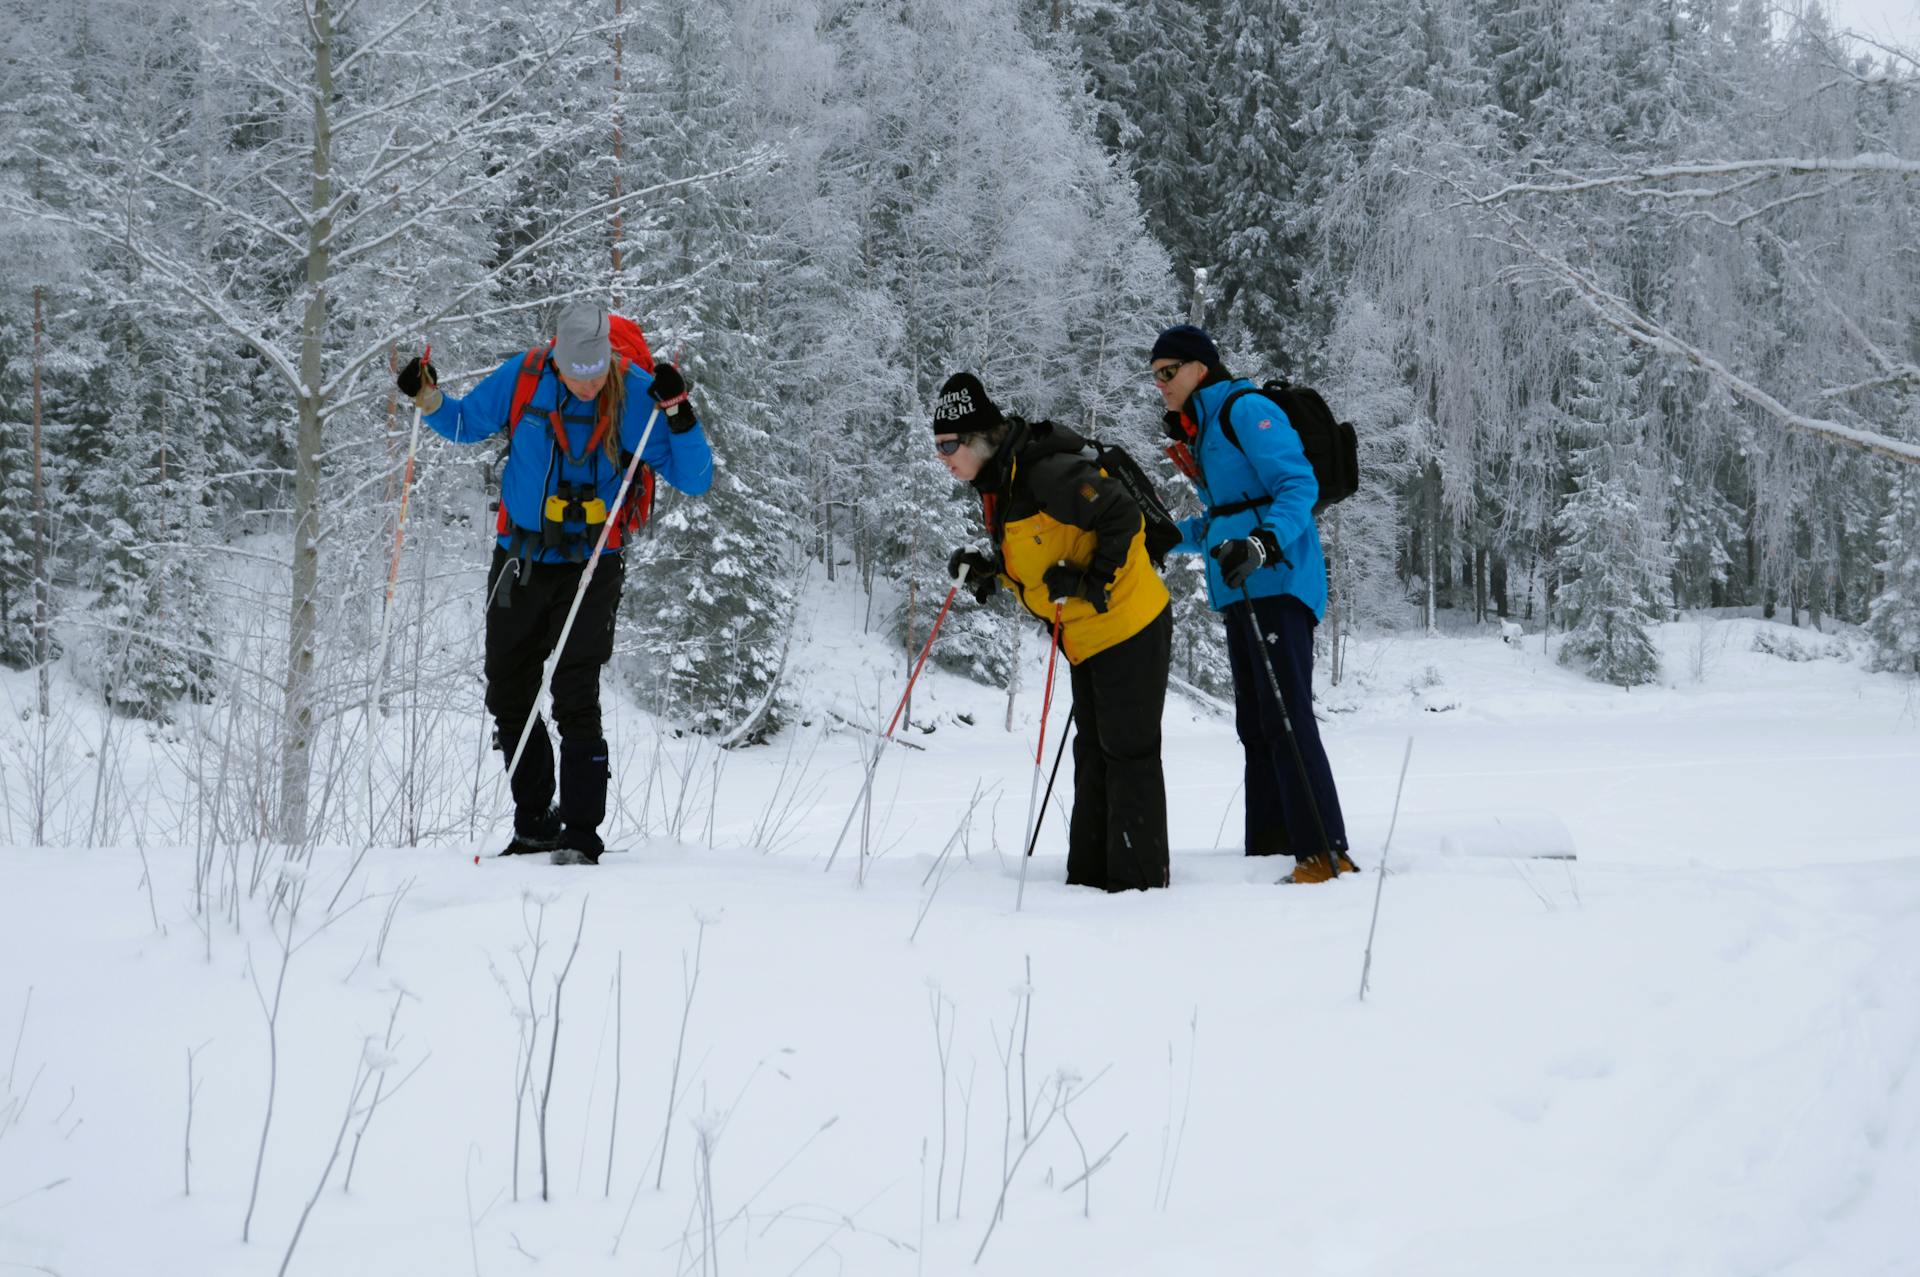 Los participantes están examinando huellas de lobo durante un tour guiado de rastreo de lobos en la reserva natural de Malingsbo-Kloten en Suecia.